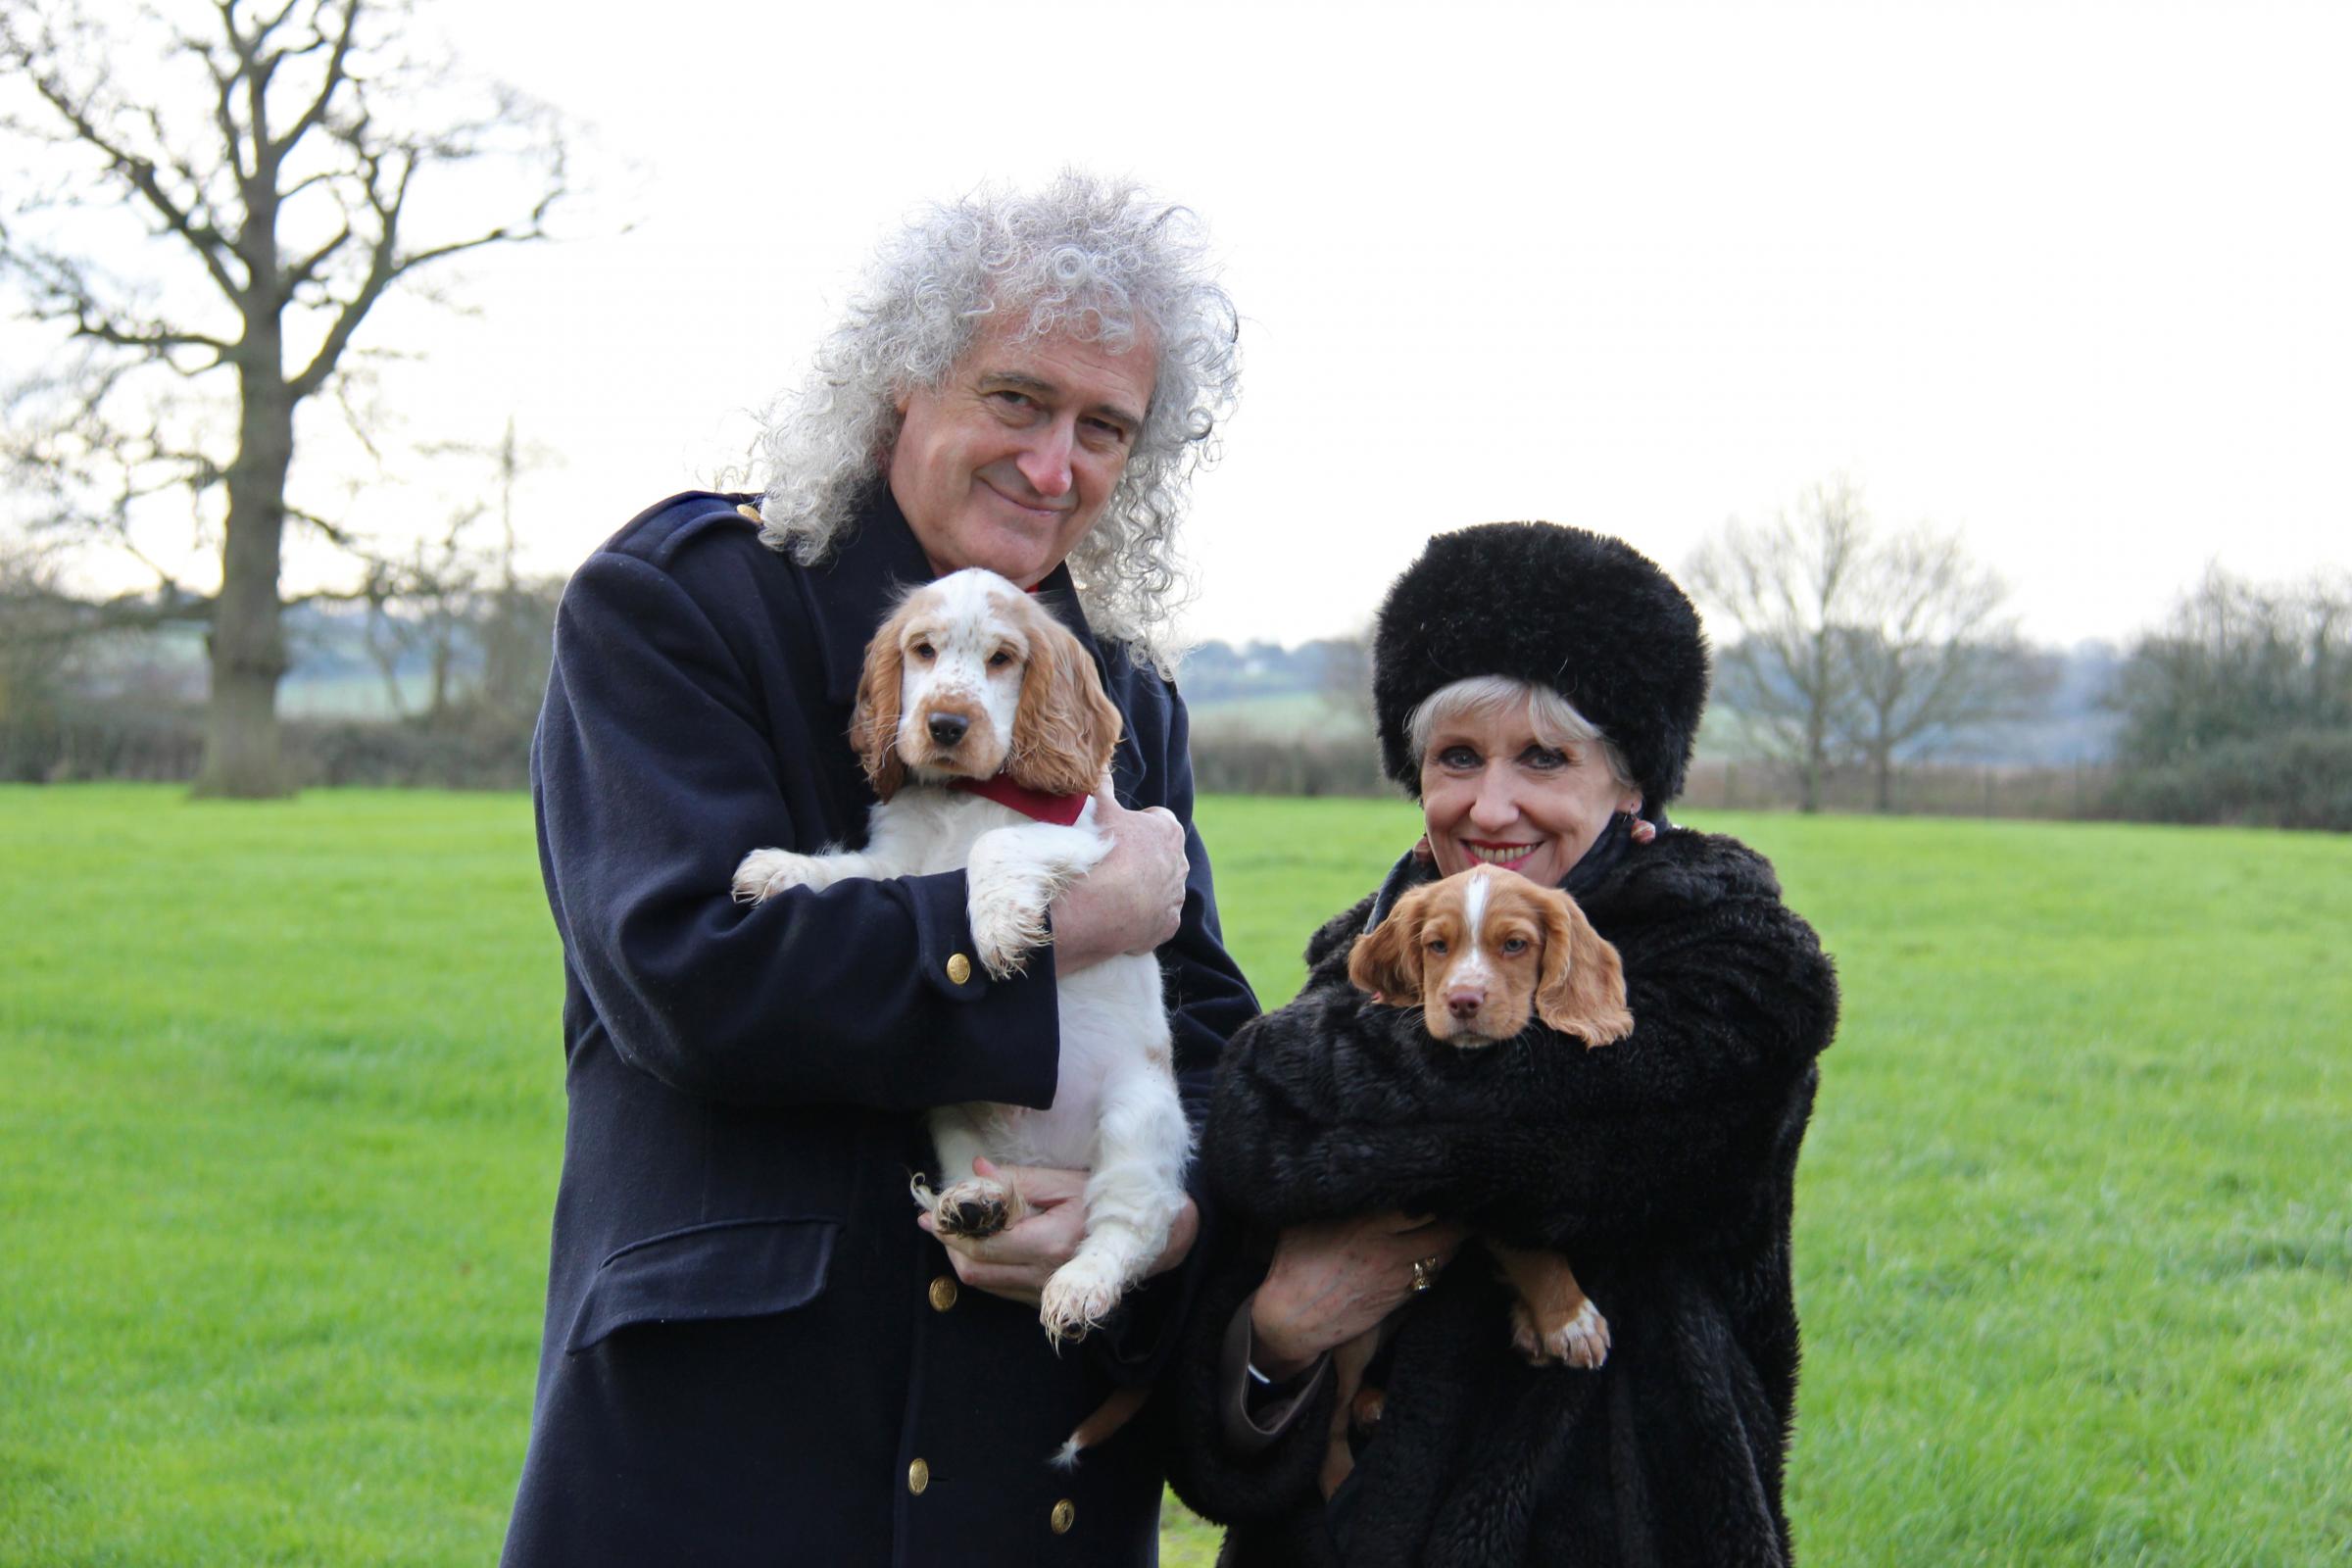 Brian, Anita and puppies